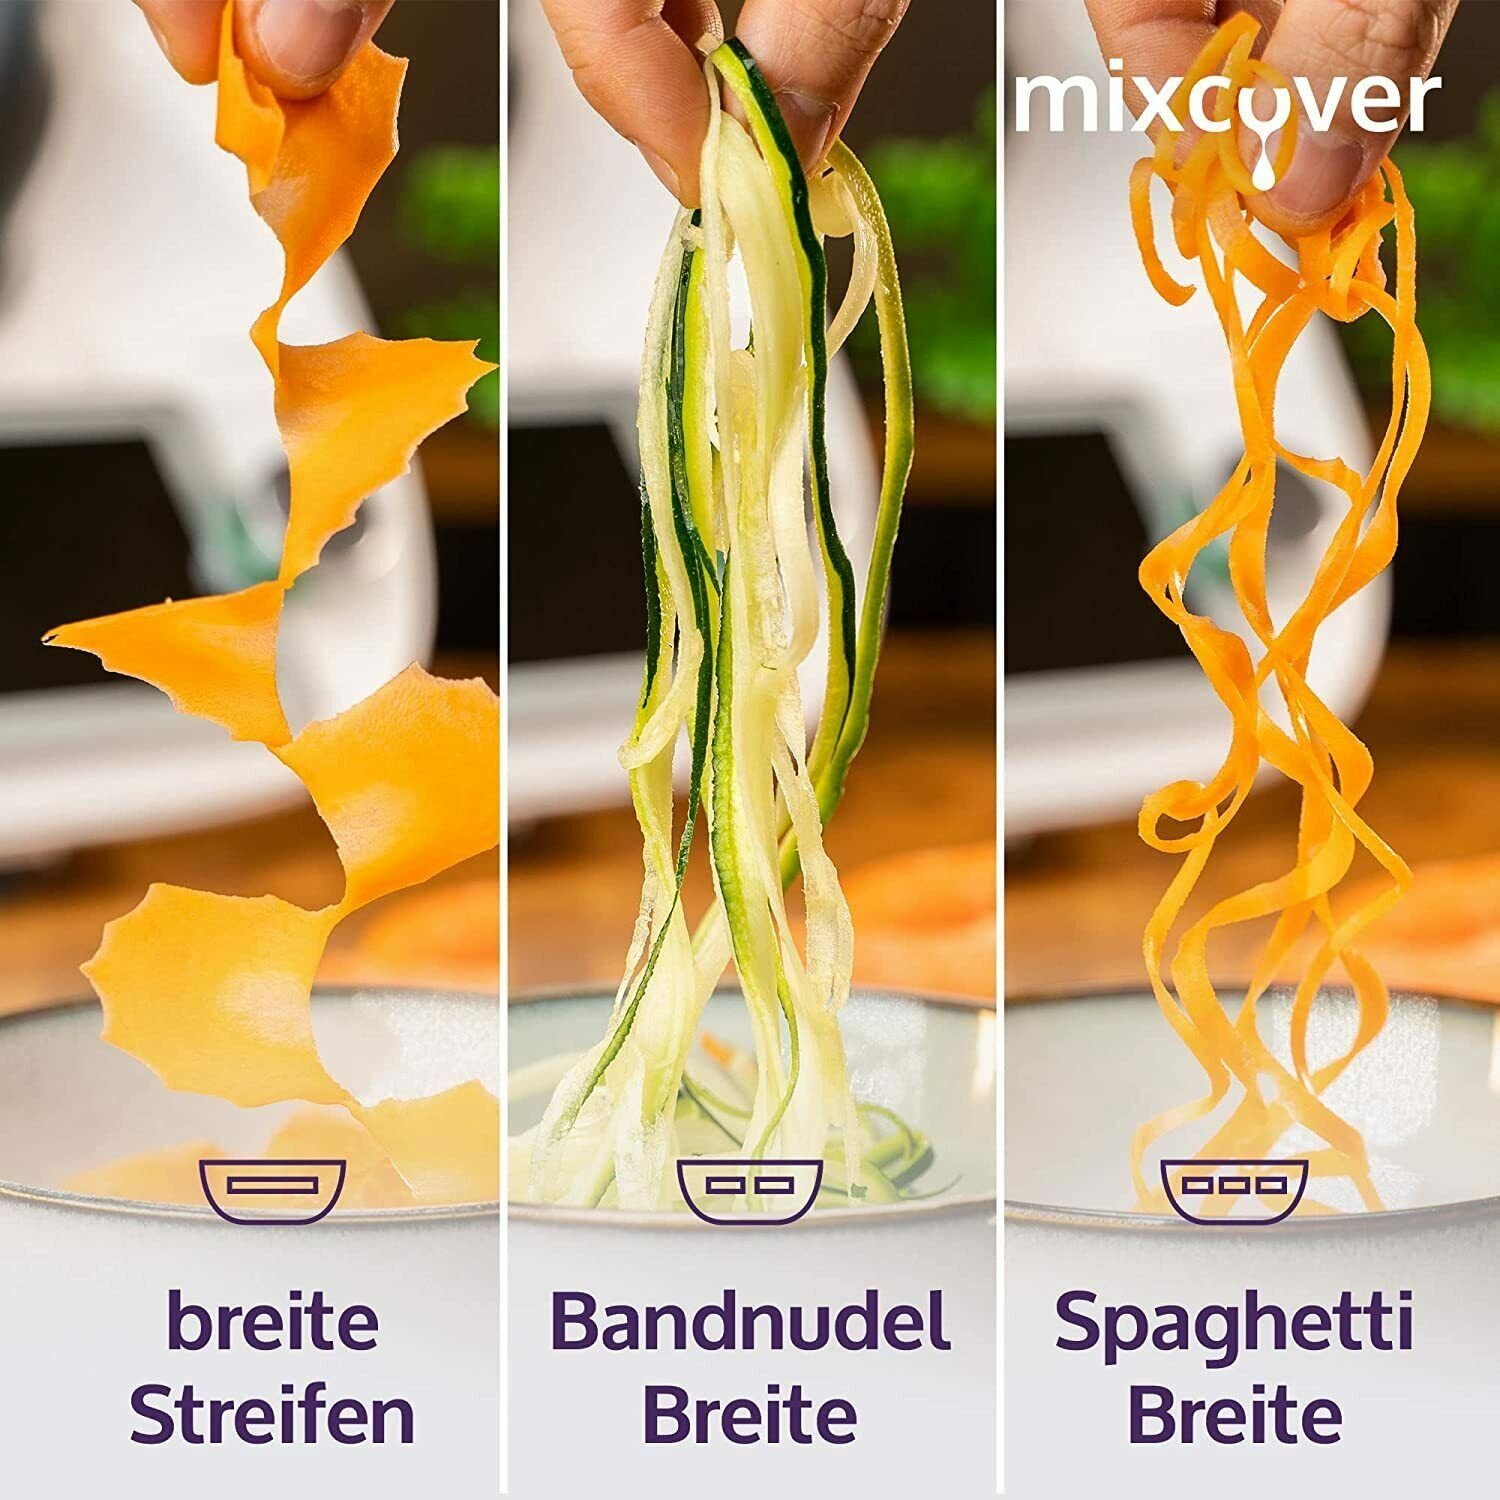 TM5 Mixcover mit Küchenmaschinen-Adapter schneiden Spiralschneider mixcover TM6 kompatibel Thermomix Gemüsenudeln